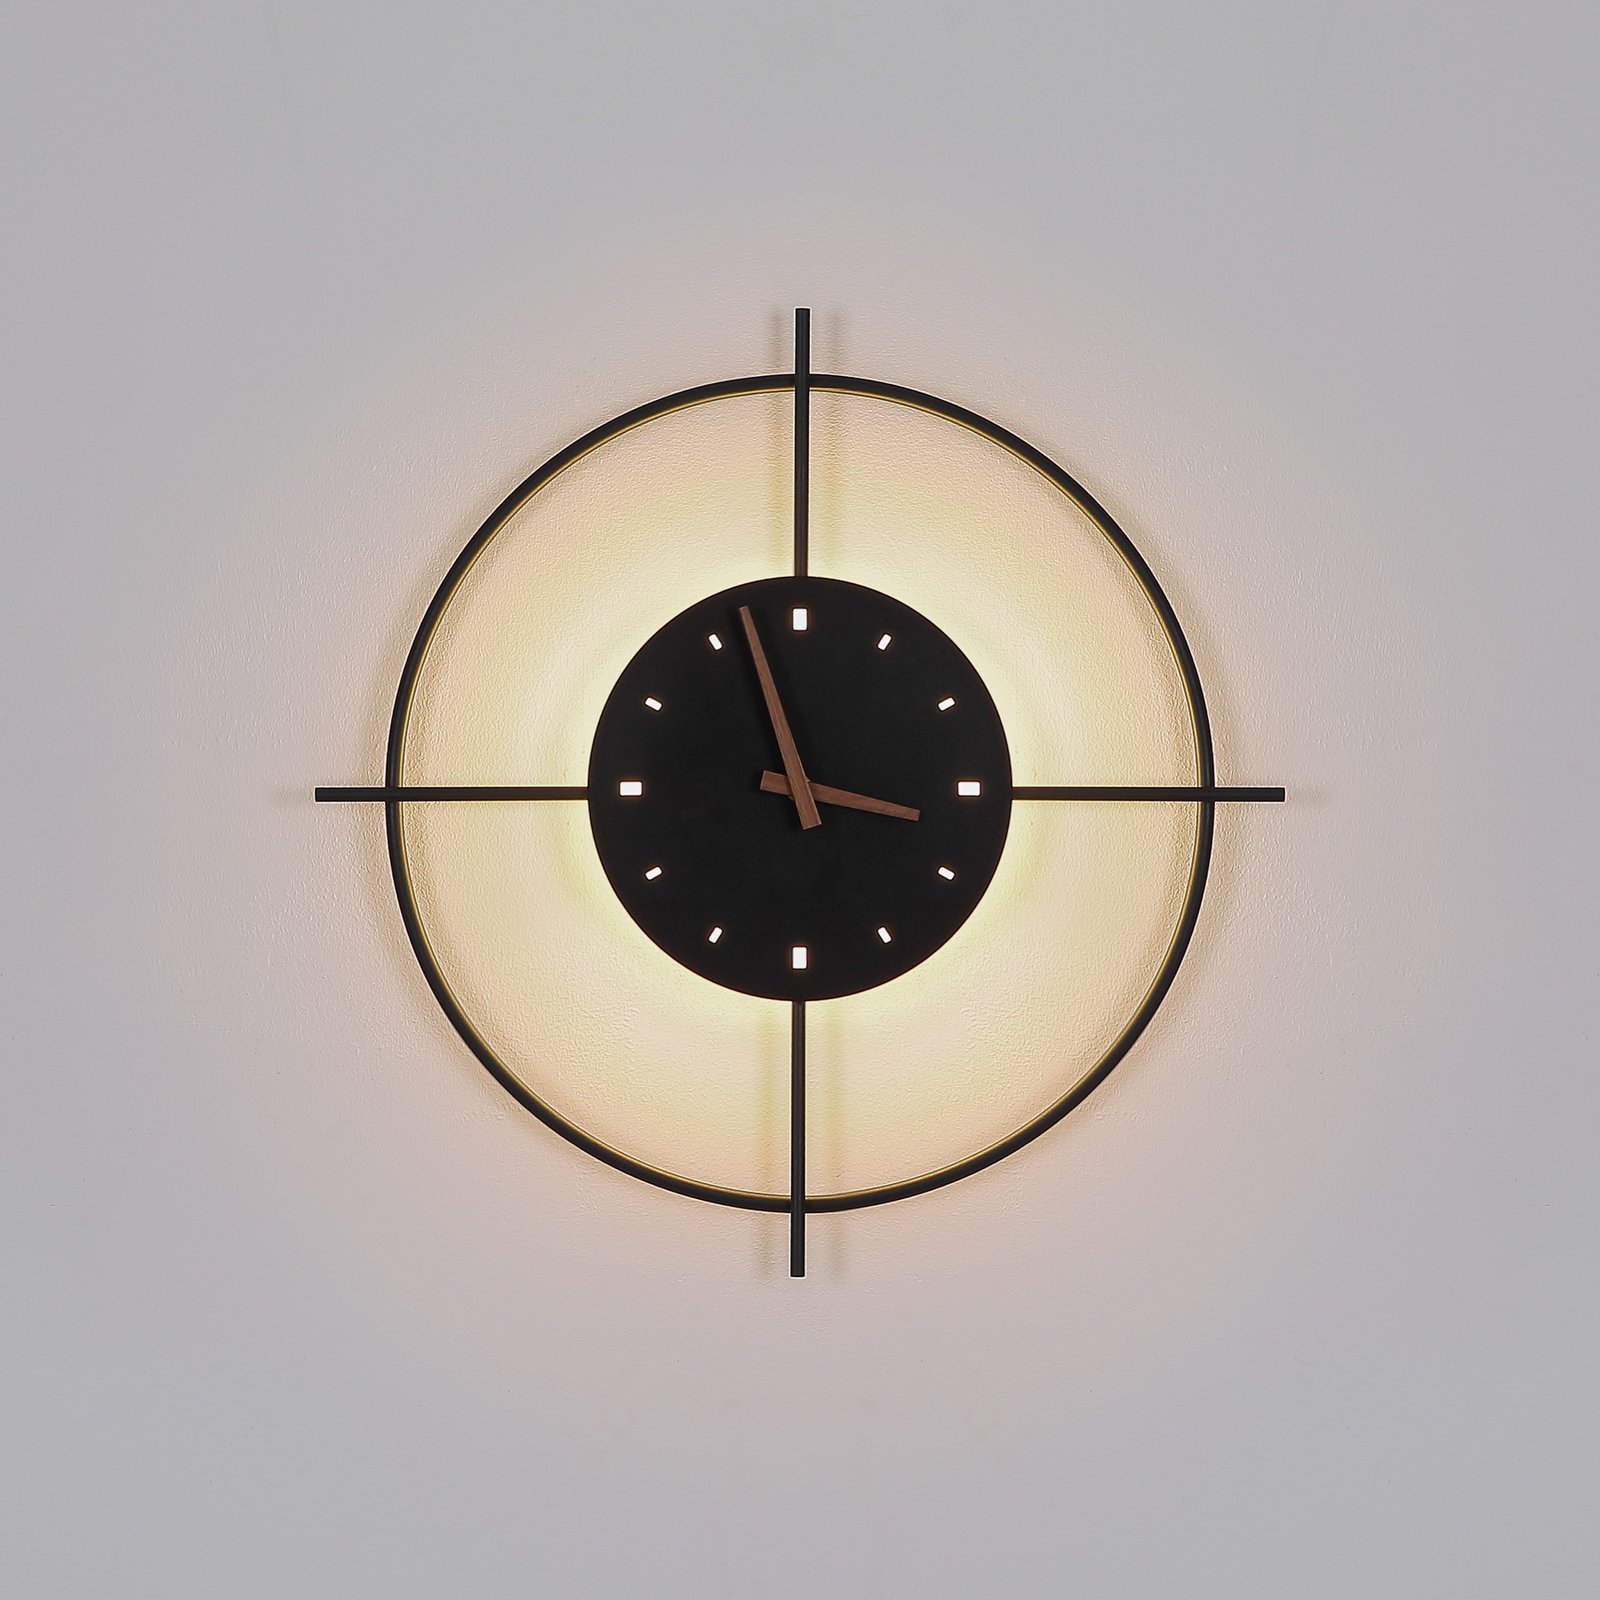 Nástenné LED svetlo Sussy s hodinami čierna Ø 50cm